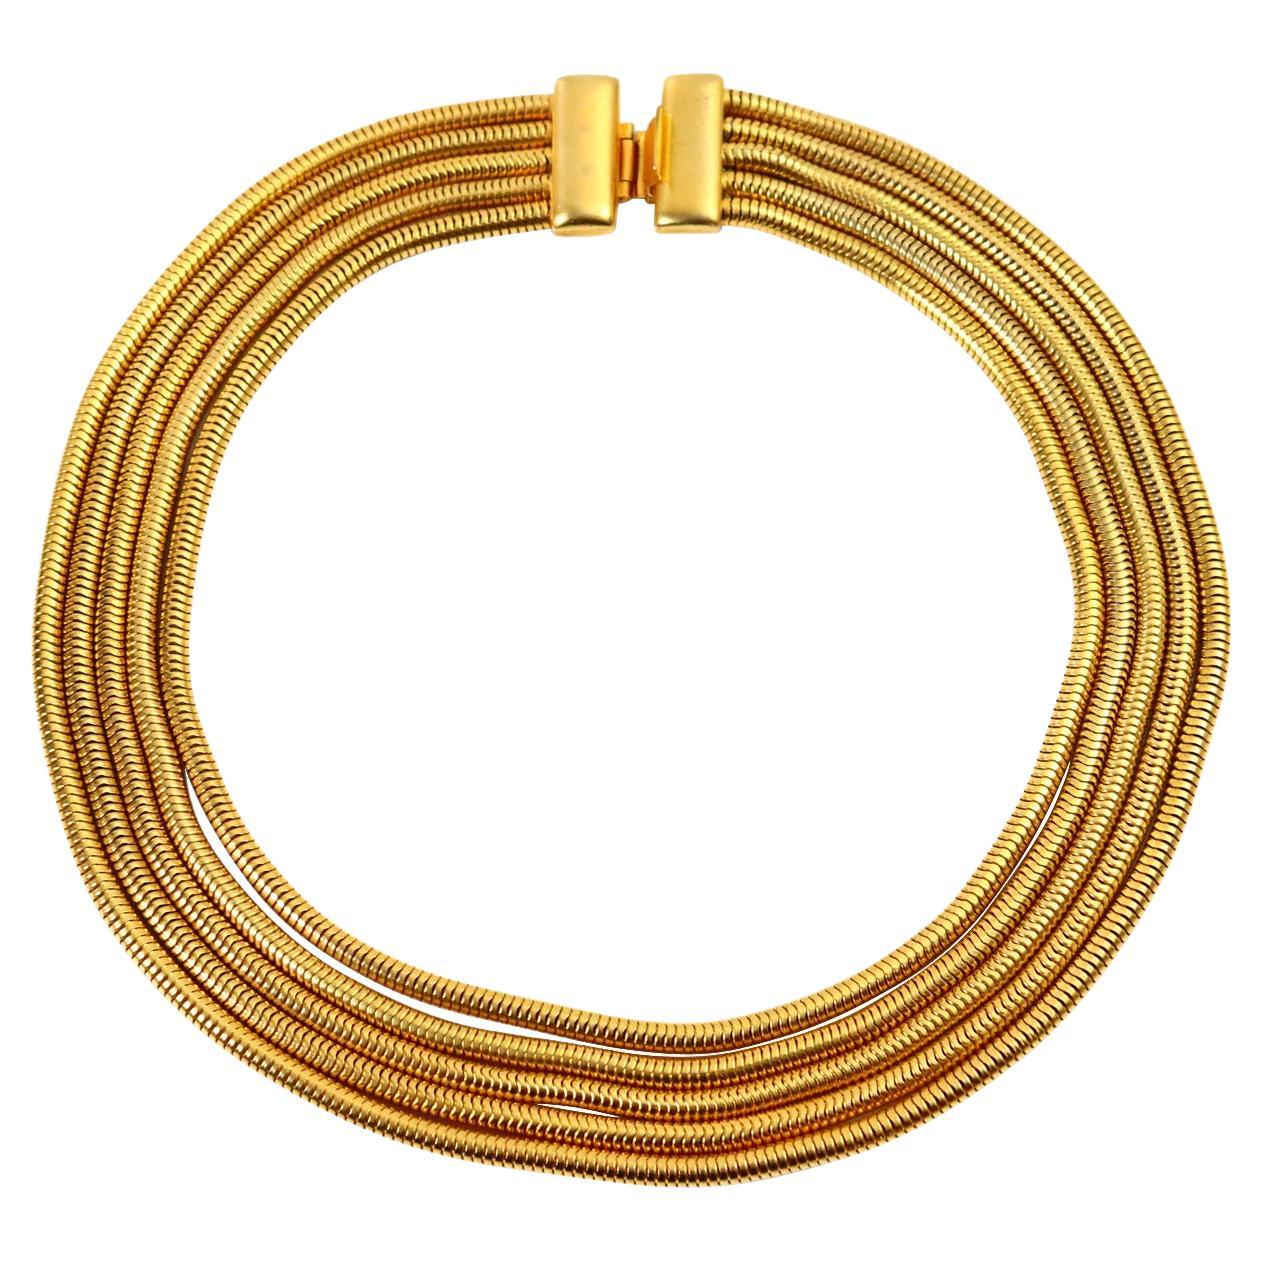 Vintage Gold 5 Strand abgestufte Schlange Kette CIRCA 1990er Jahre. Eine sehr klassische Schlangenkette, die man sowohl nach oben als auch nach unten tragen kann.  Es gibt ein Armband vor Ort, das zu diesem Stück passt. Dieses Stück wird Ihre